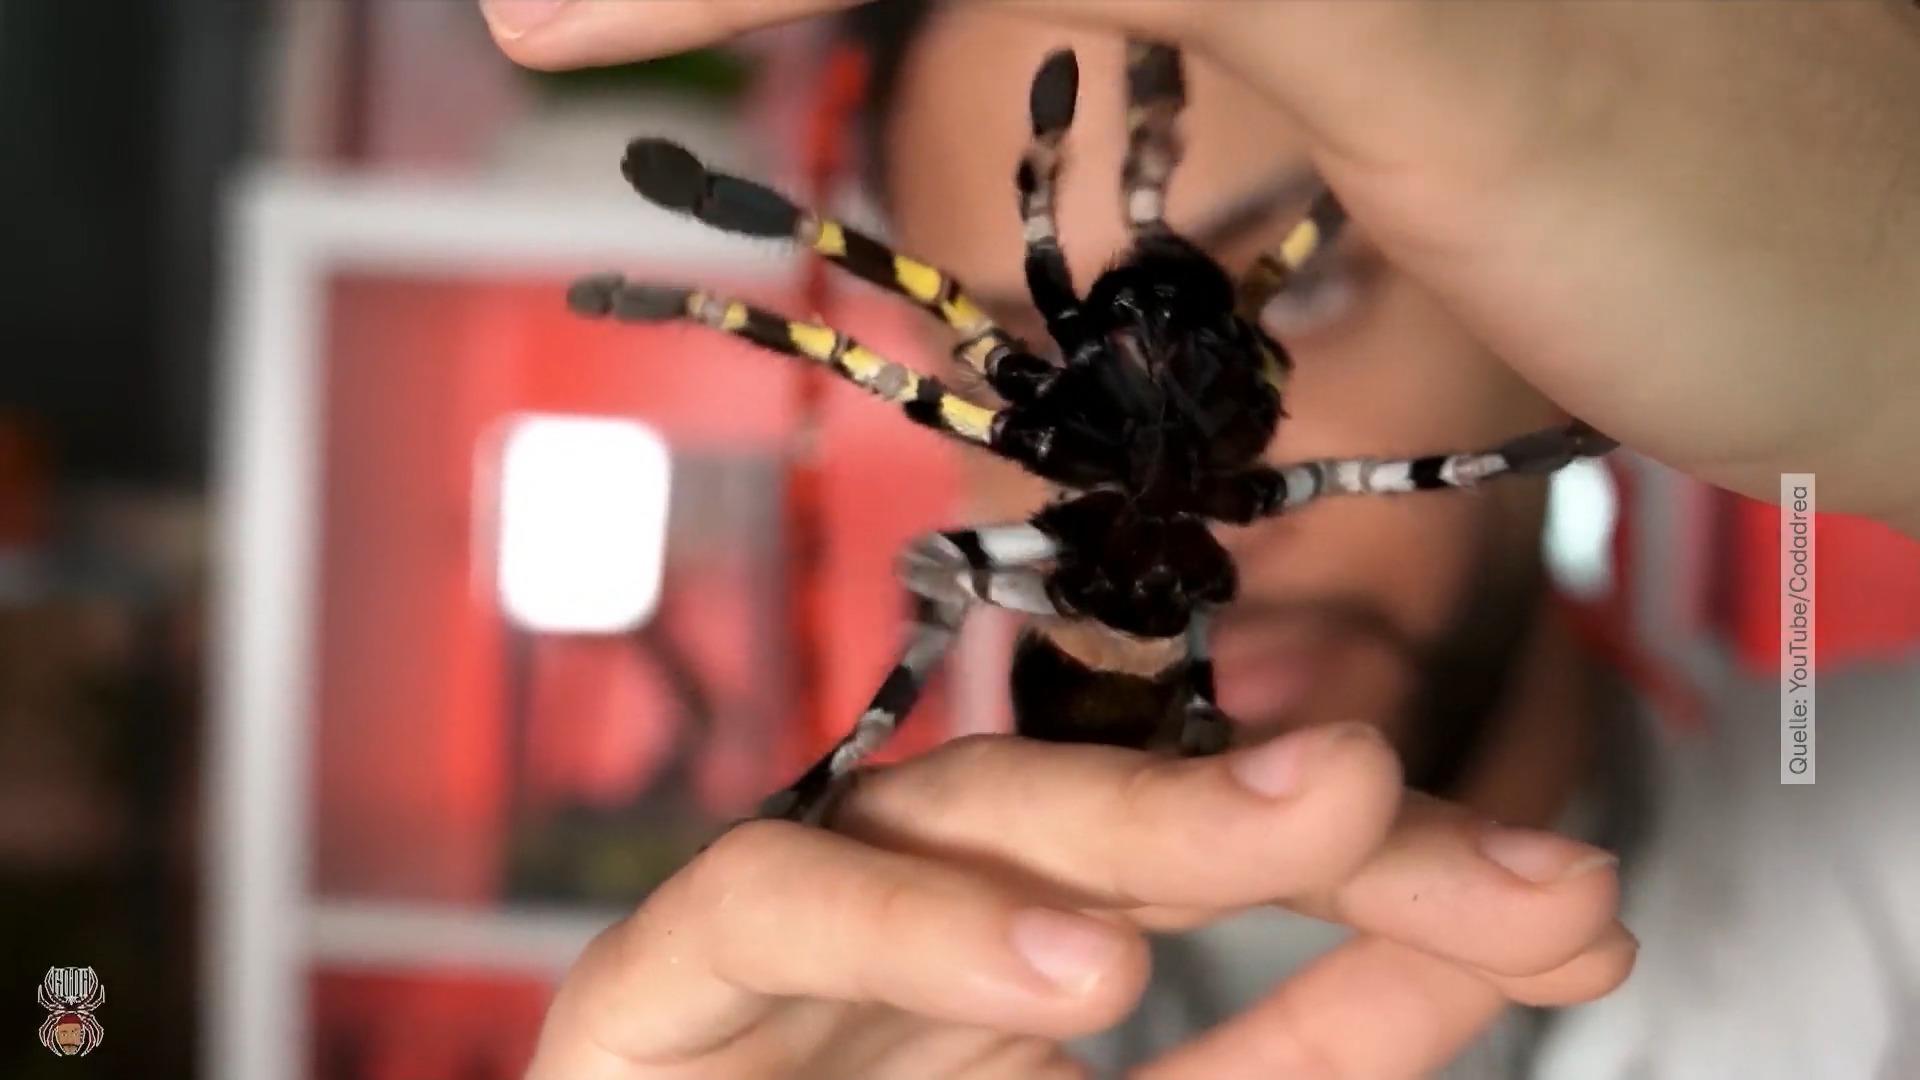 Der Spinnen-Influencer Dennis Soruklu als Internet-Star Großer Erfolg mit teils giftigen Spinnen